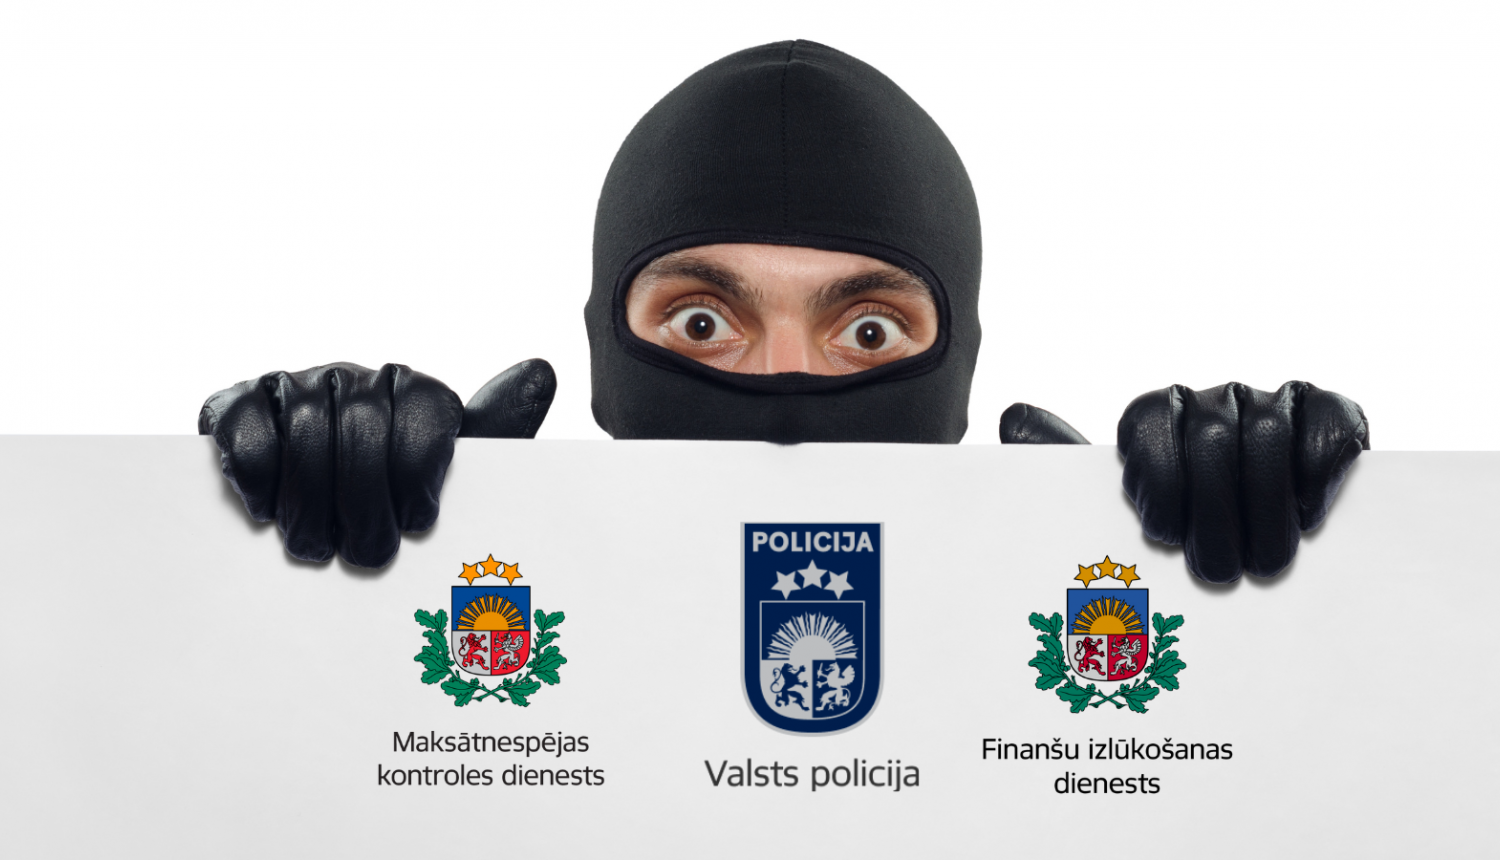 Vīrietis melnā maskā un cimdos tur rokās baltu papīra lapu, uz kuras virsū ir Maksātnespējas kontroles dienesta, Finanšu izlūkošanas dienesta un Valsts policijas logo